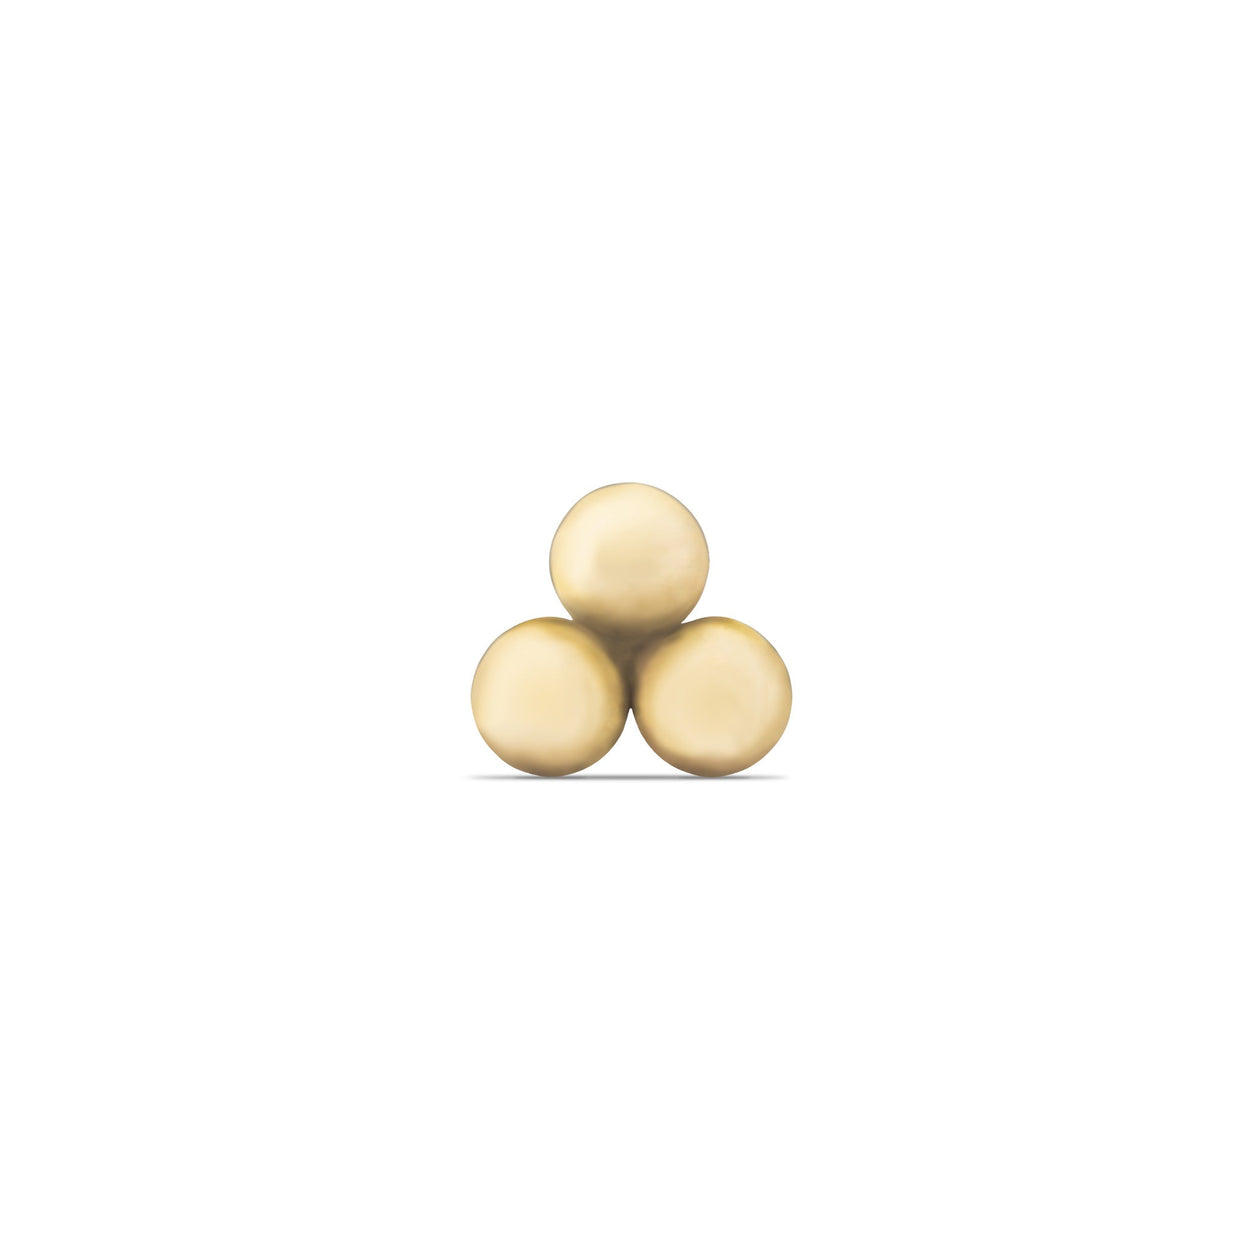 Solitaire Diamond Stud Earring, Flat Earring Backs, Nap Earrings, Gold Sleeper Earrings, 14K Yellow Gold, 14K White Gold - 5mm 6.5mm 8mm, 14K White